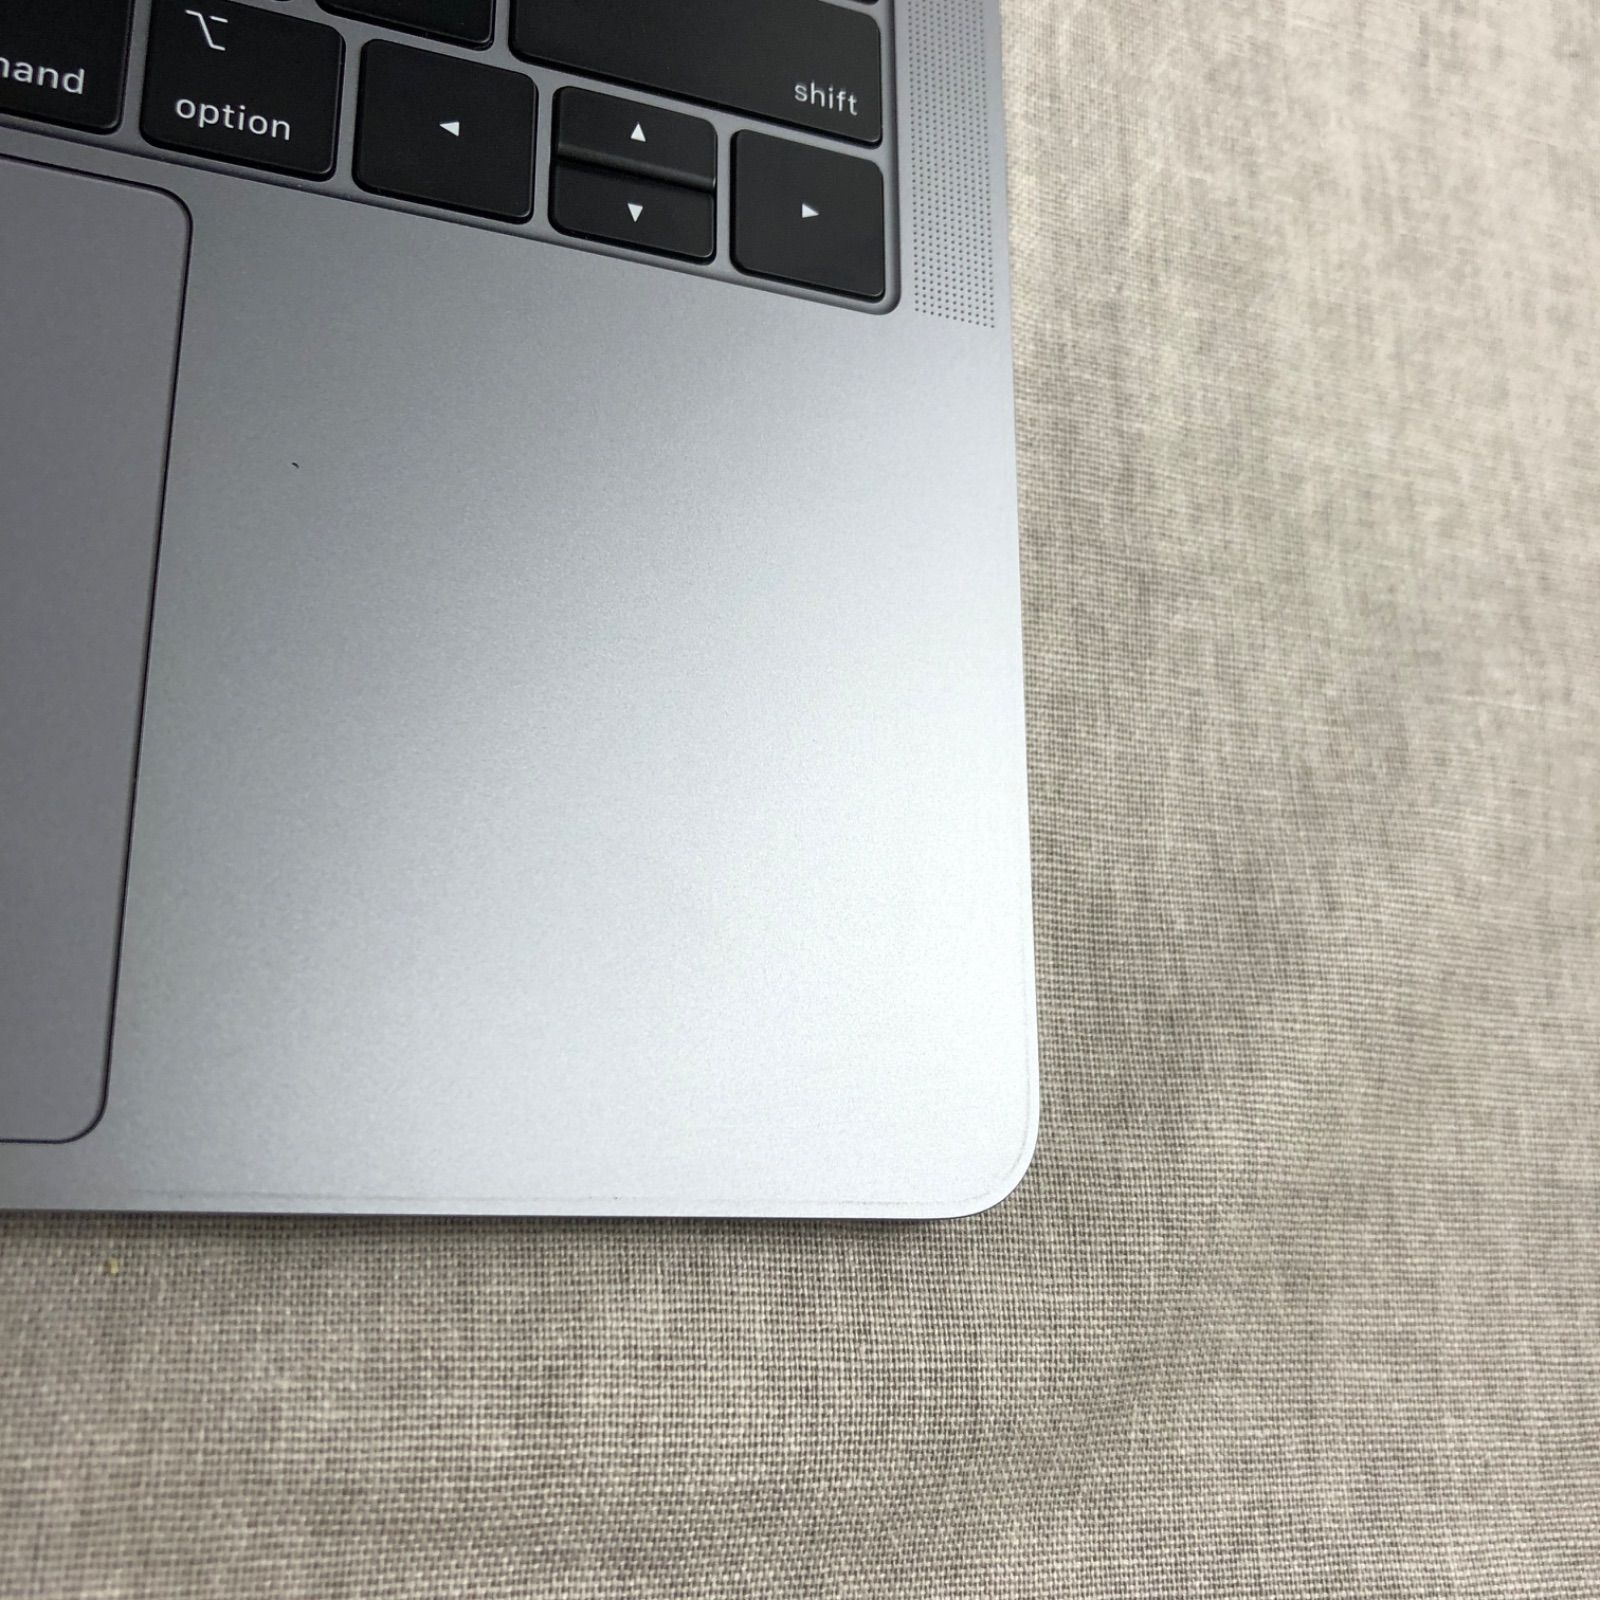 本体のみ】Apple MacBook Pro (13インチ, 2019, Thunderbolt 3ポート x